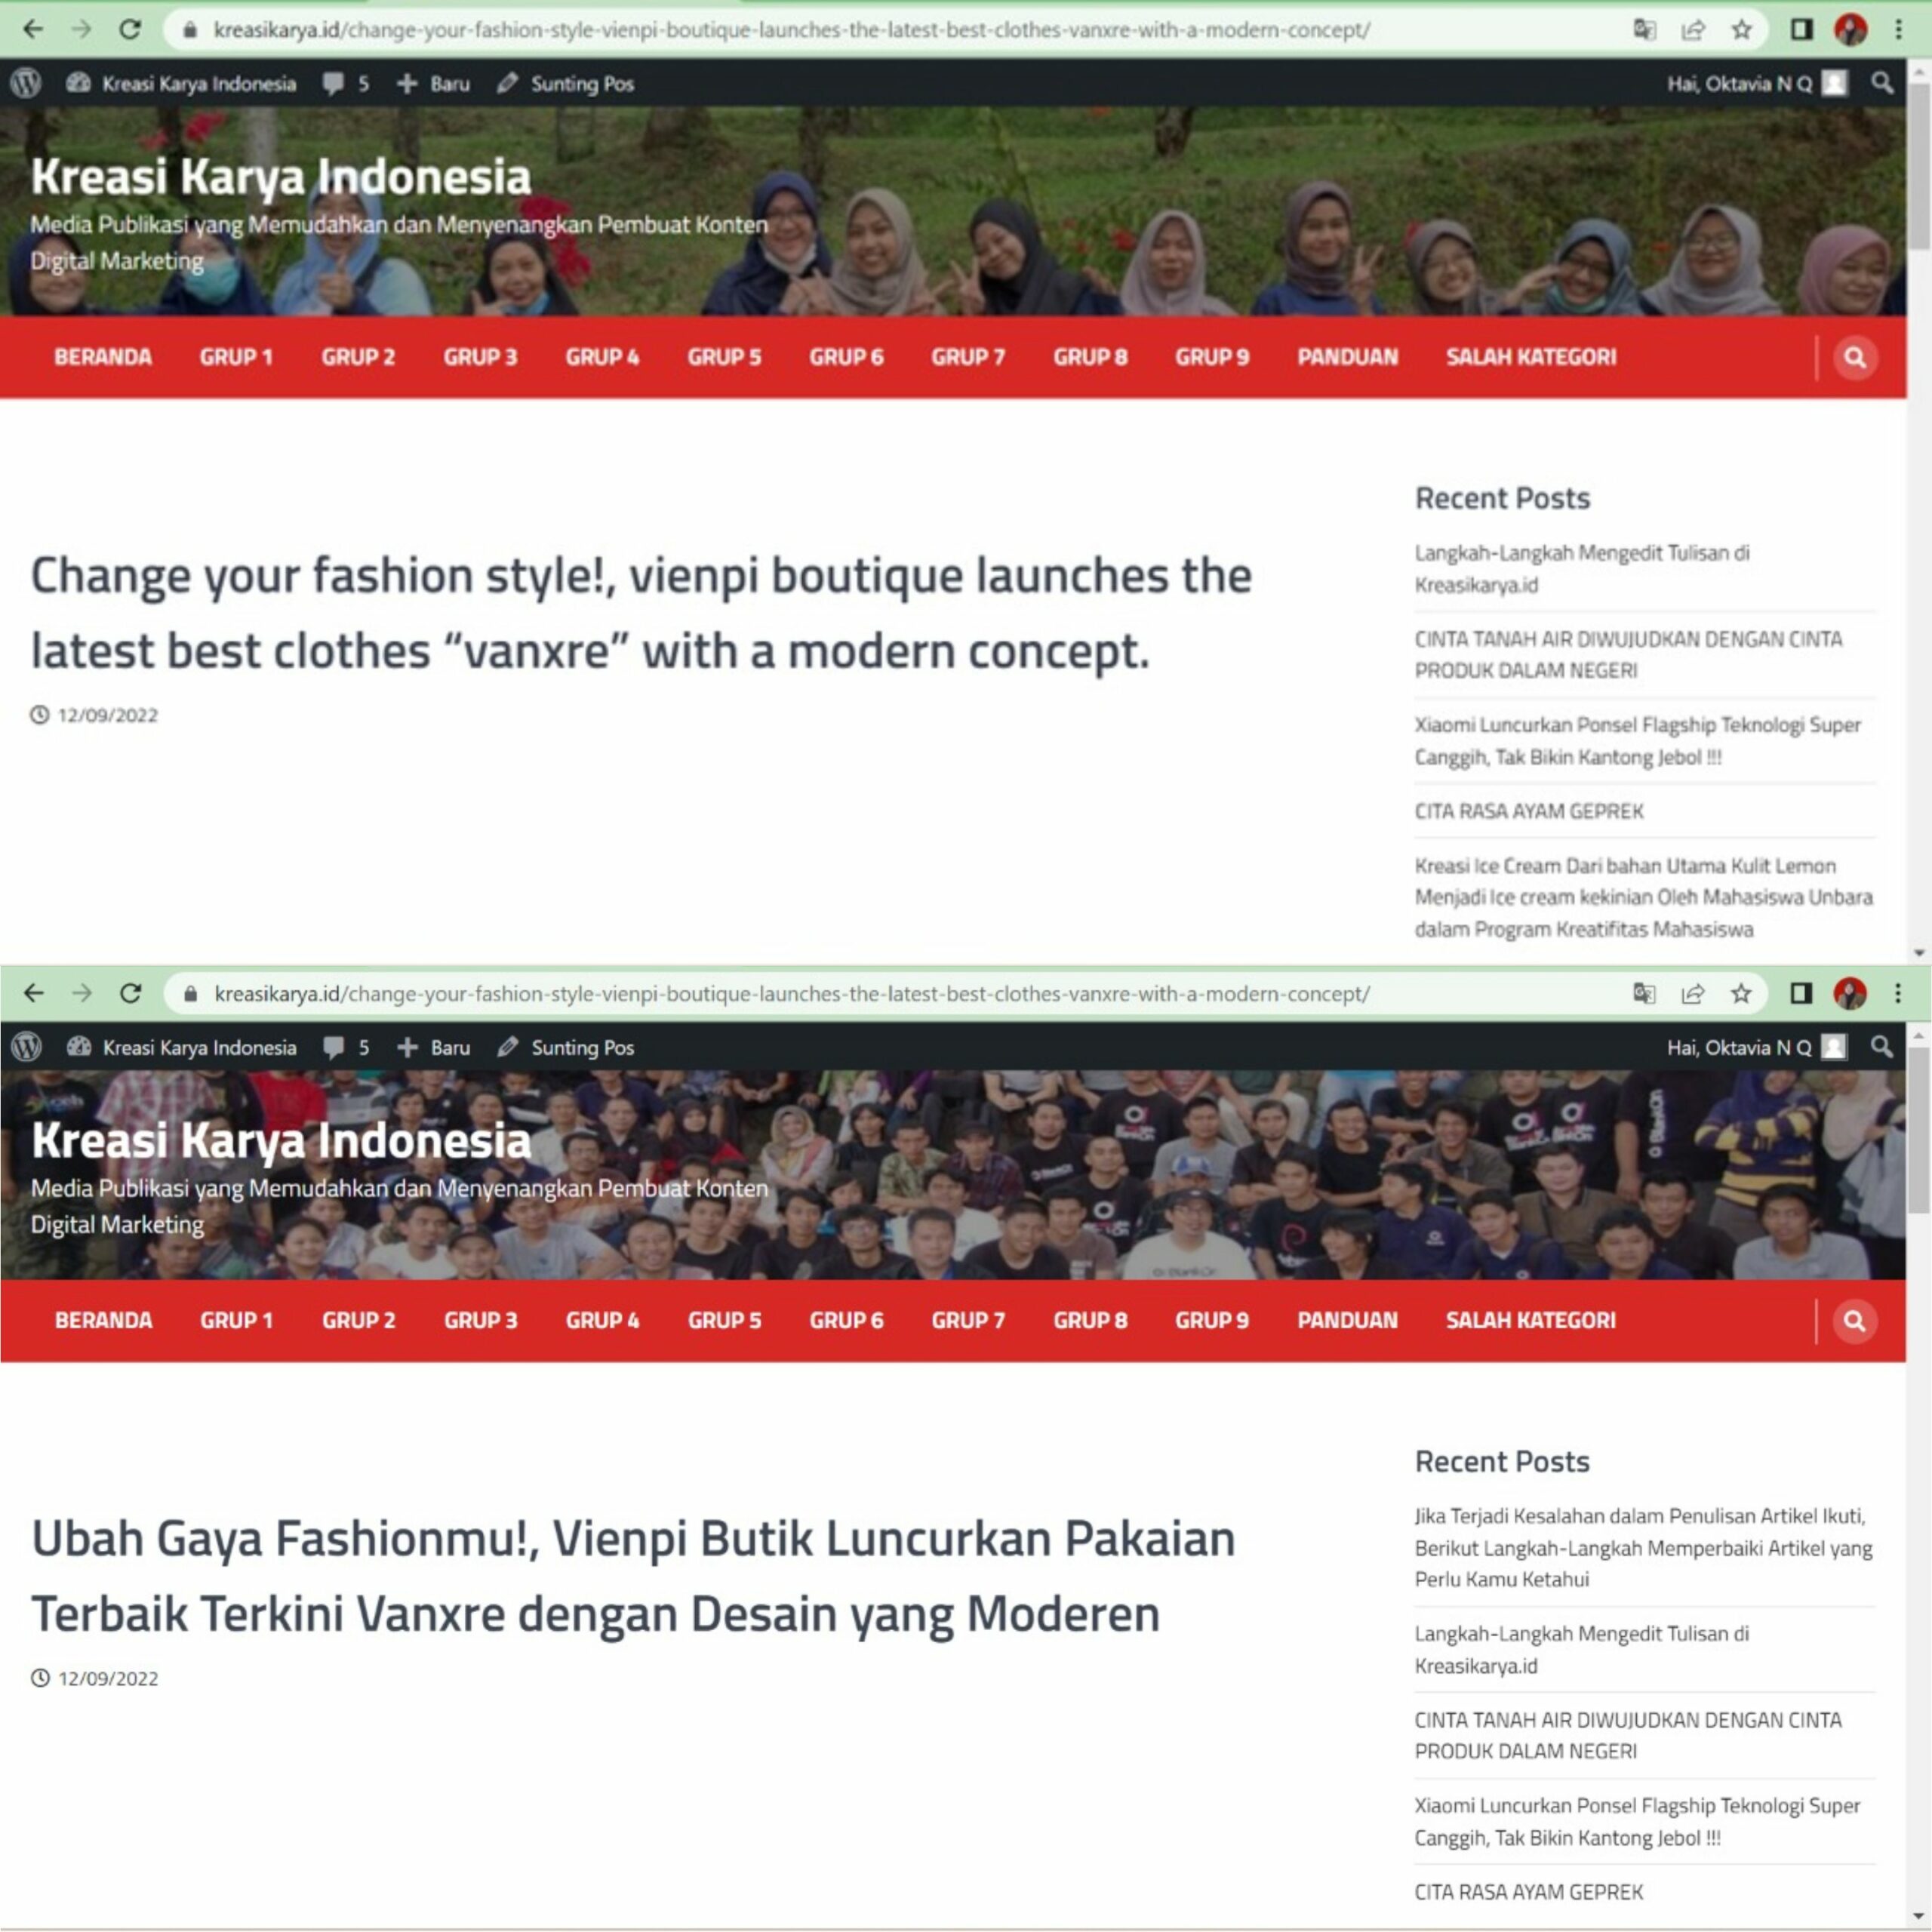 Tata Cara Mengedit Artikel Berita pada Laman Web Kreasi Karya Indonesia dengan Mudah